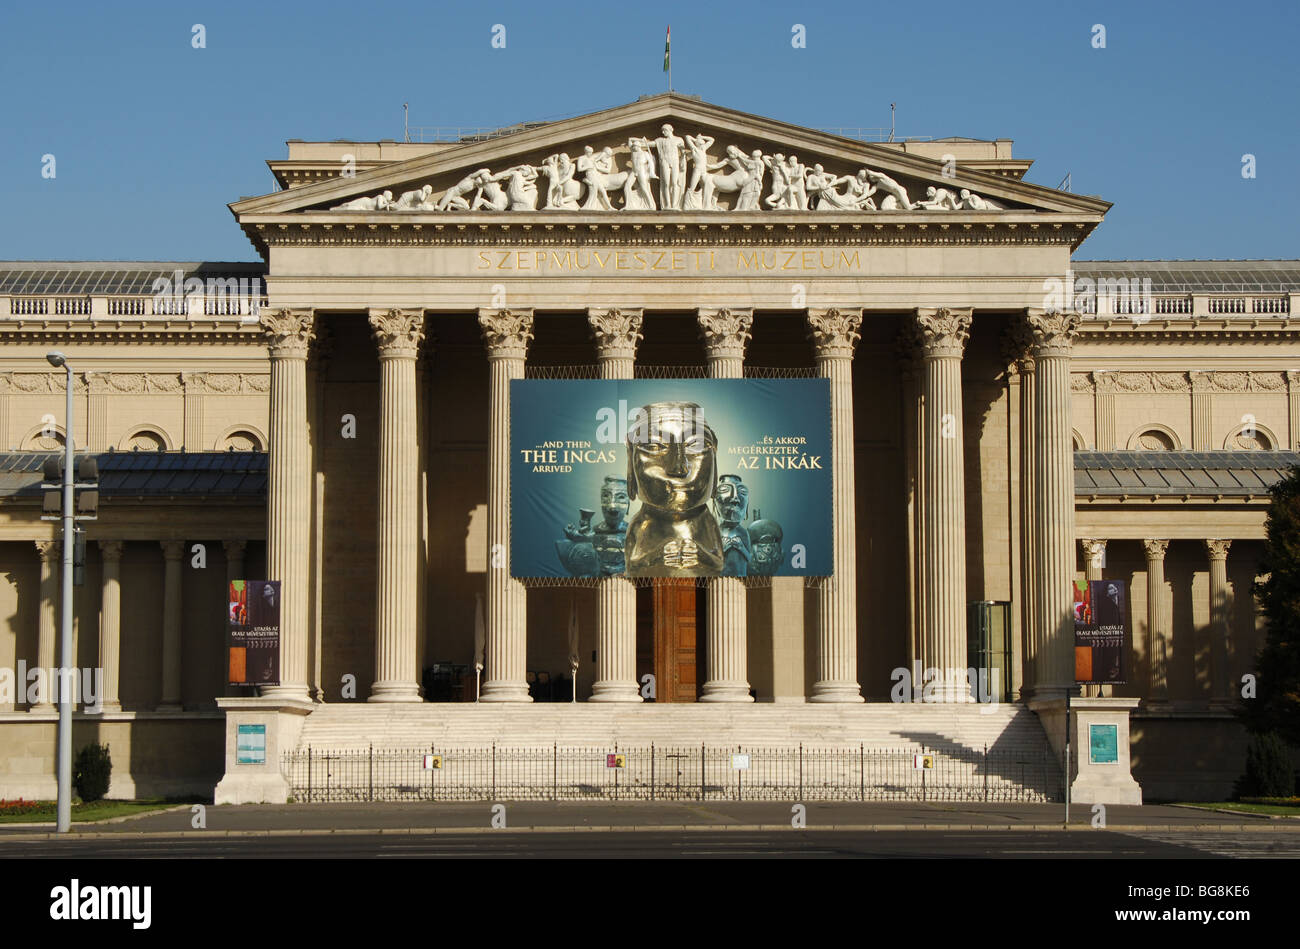 Museo delle Belle Arti (Szépművészeti). La facciata dell'edificio neoclassico situato nella Piazza degli Eroi. Budapest. Ungheria. Foto Stock